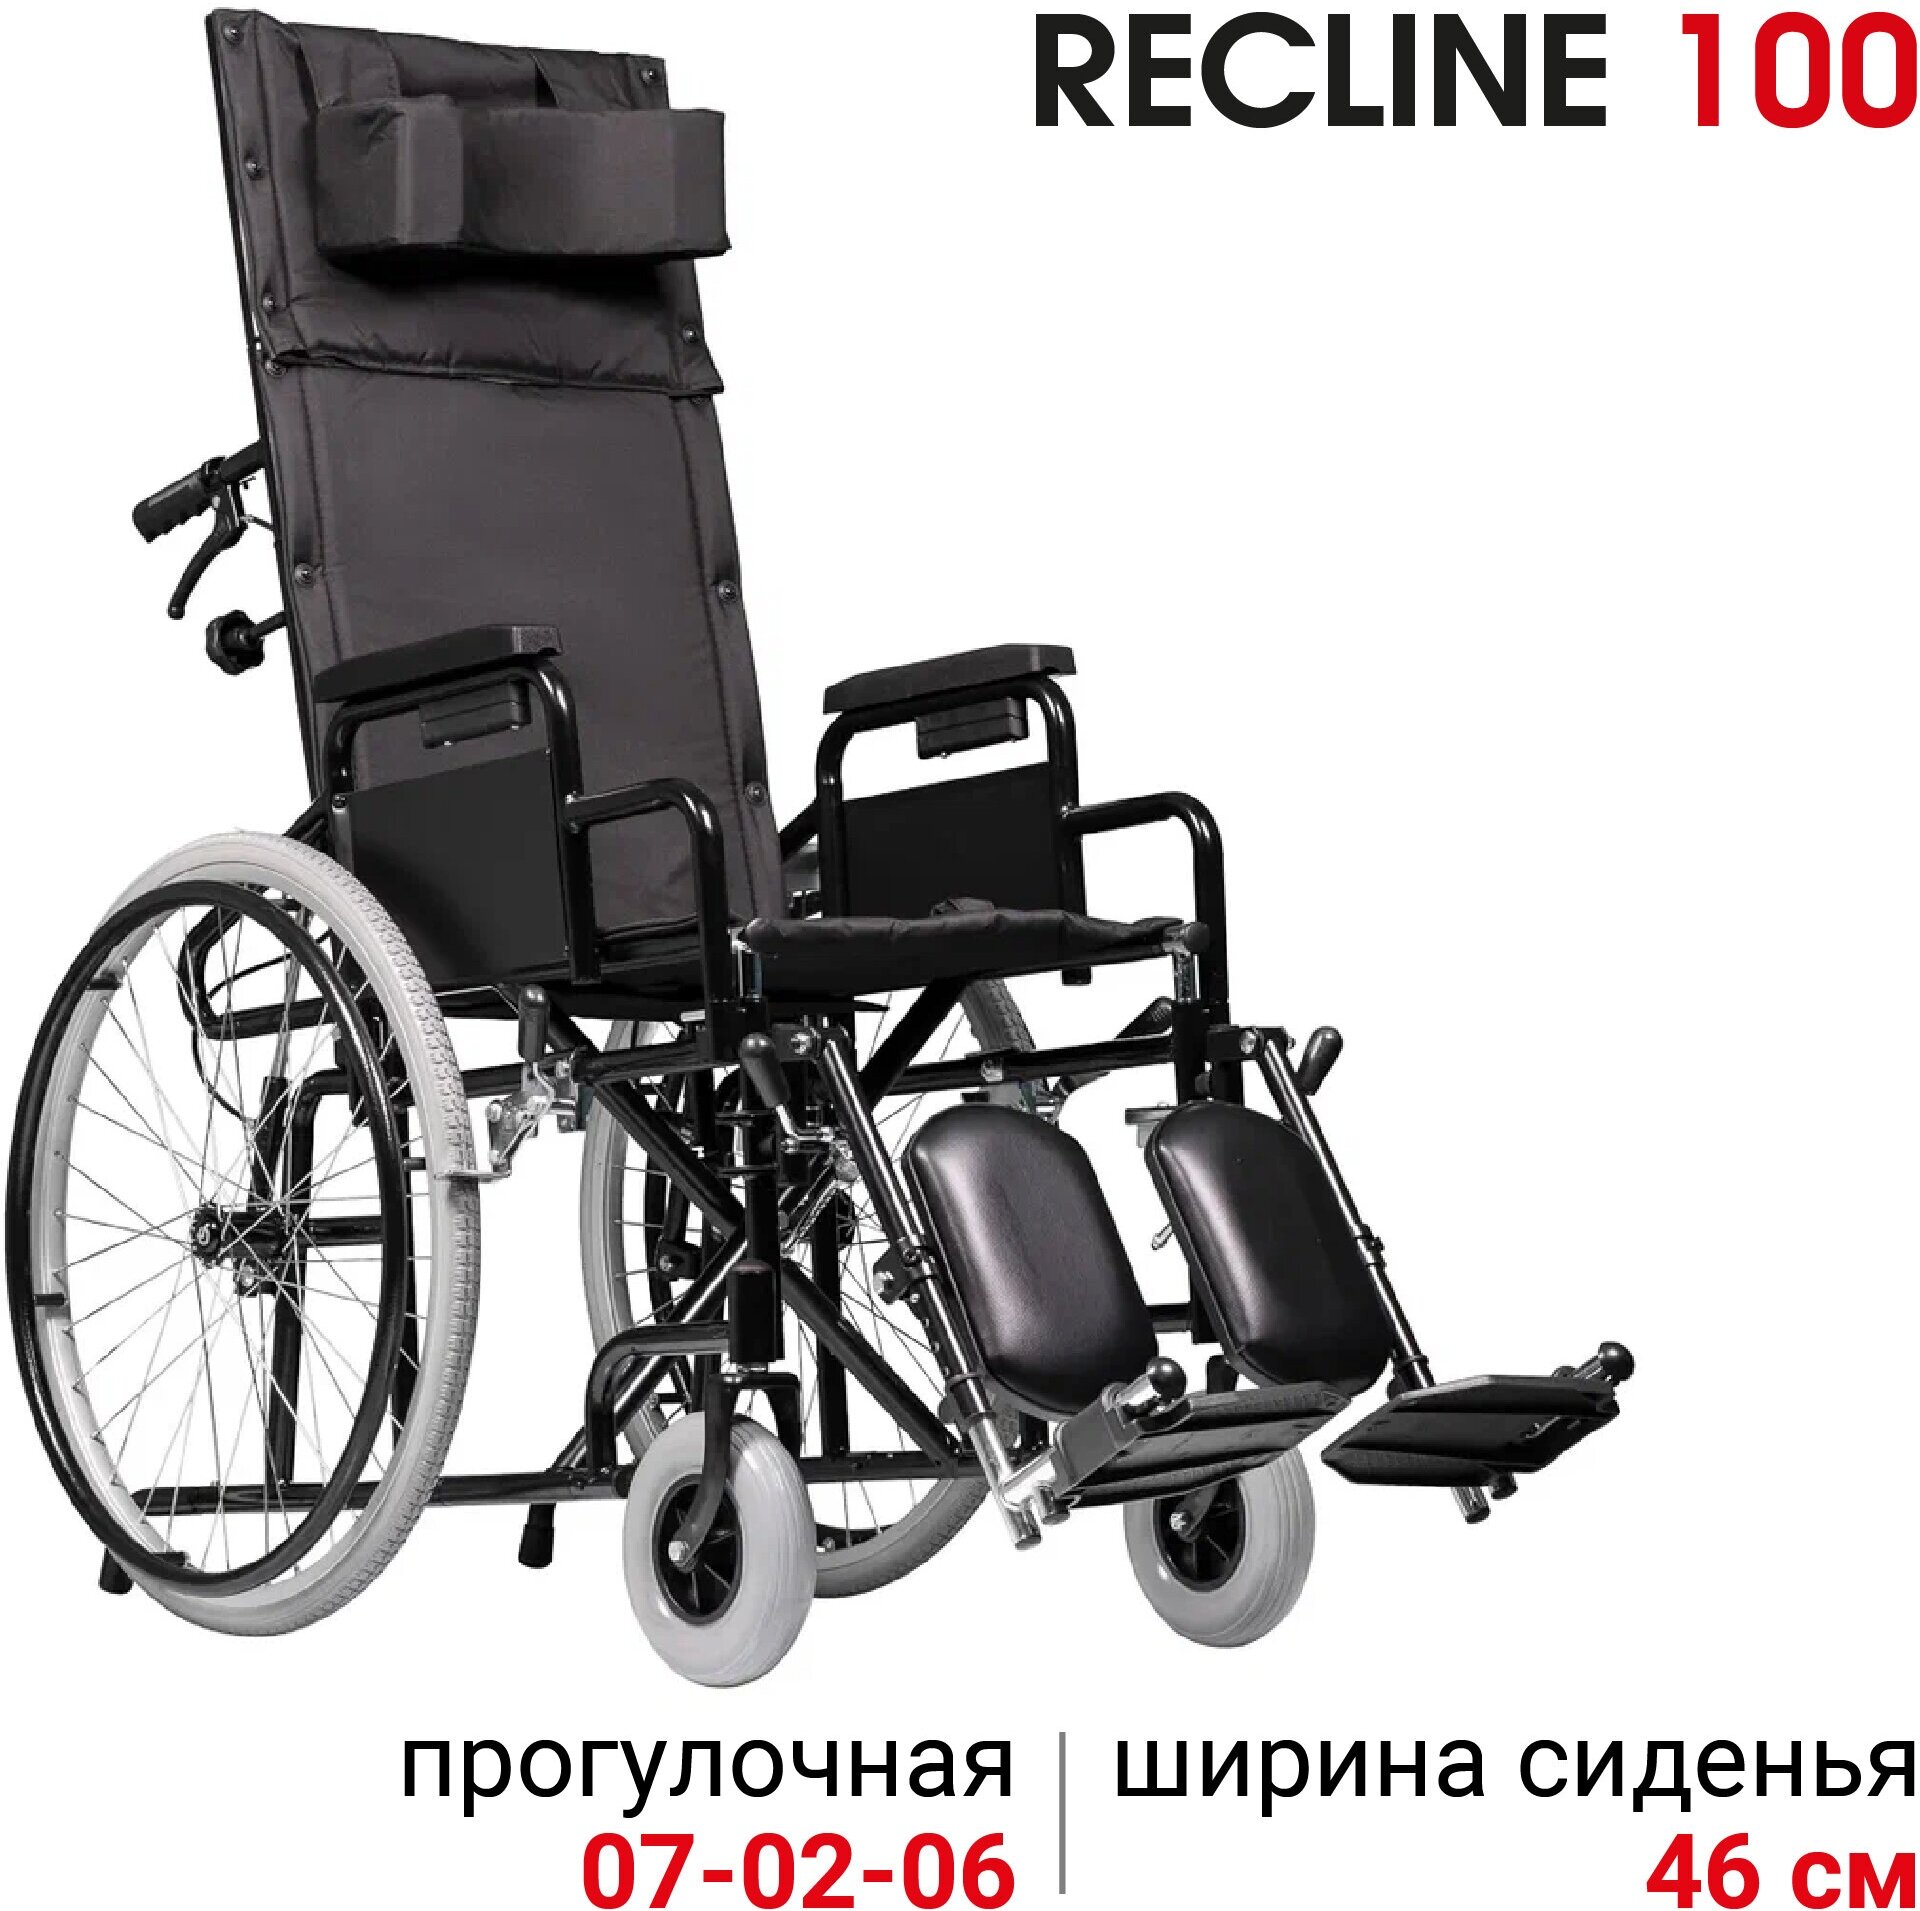 Кресло-коляска инвалидная с подголовником Ortonica Base 155/Recline 100 ширина сиденья 46 см передние литые, задние пневматические колеса Код 7-02-05, 7-02-06